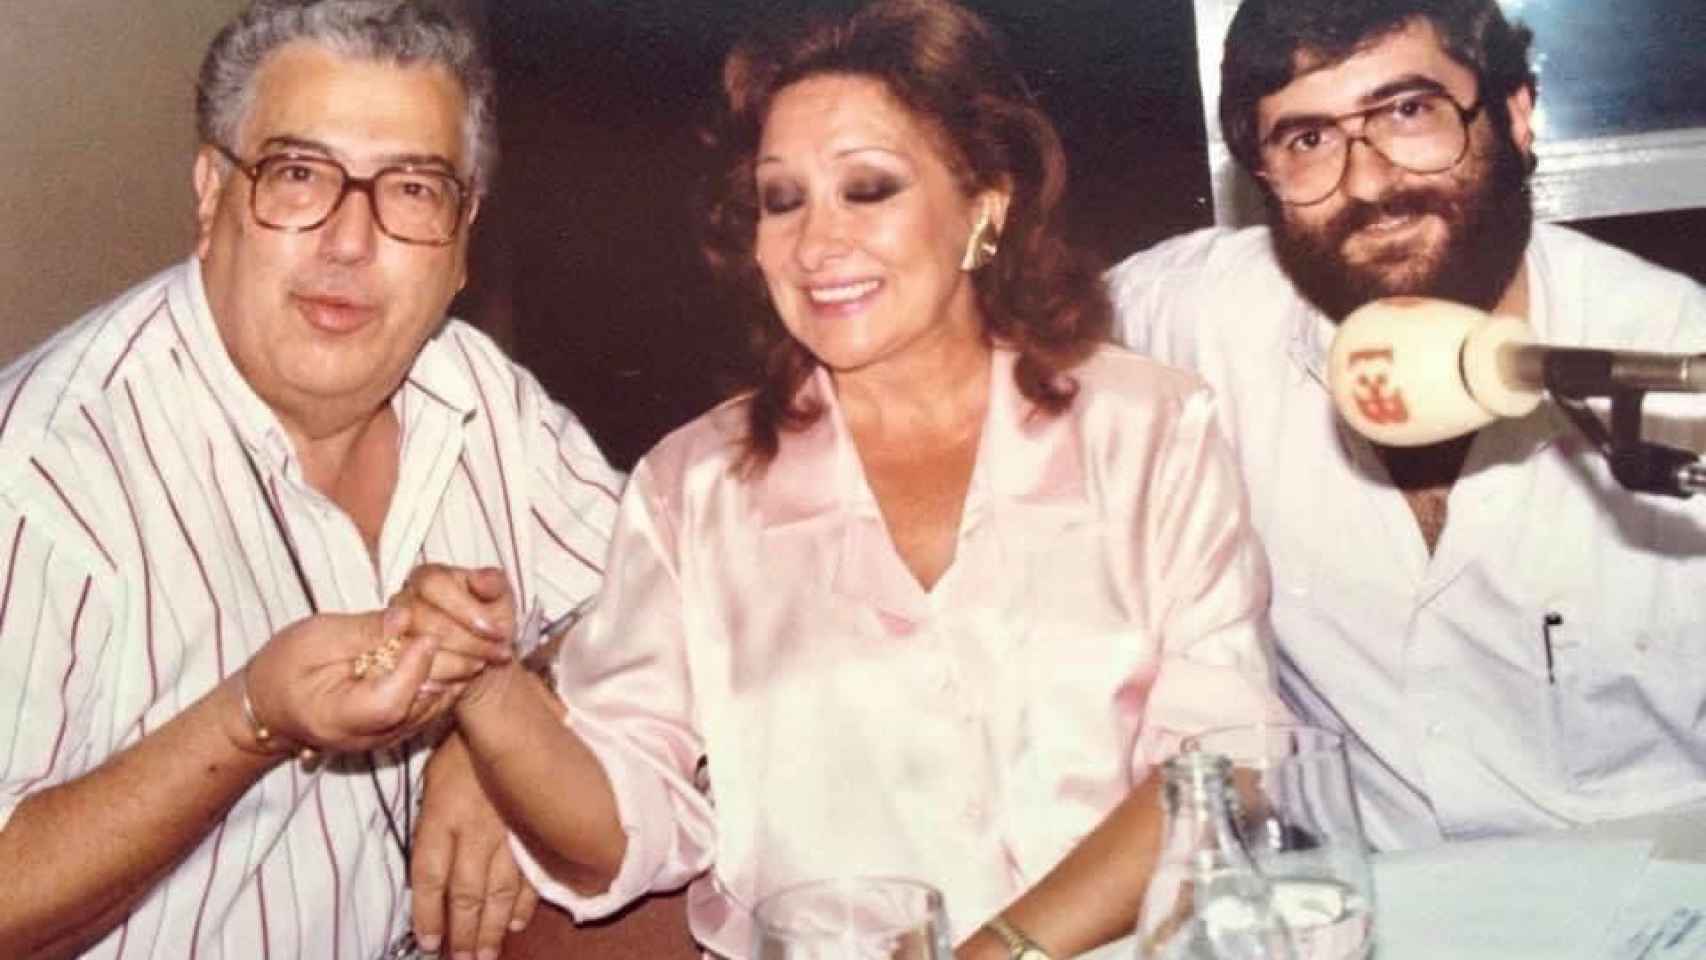 La leyenda radiofónica José Luis Pecker, la coplista Marifé de Triana y el periodista murciano Albert Castillo.